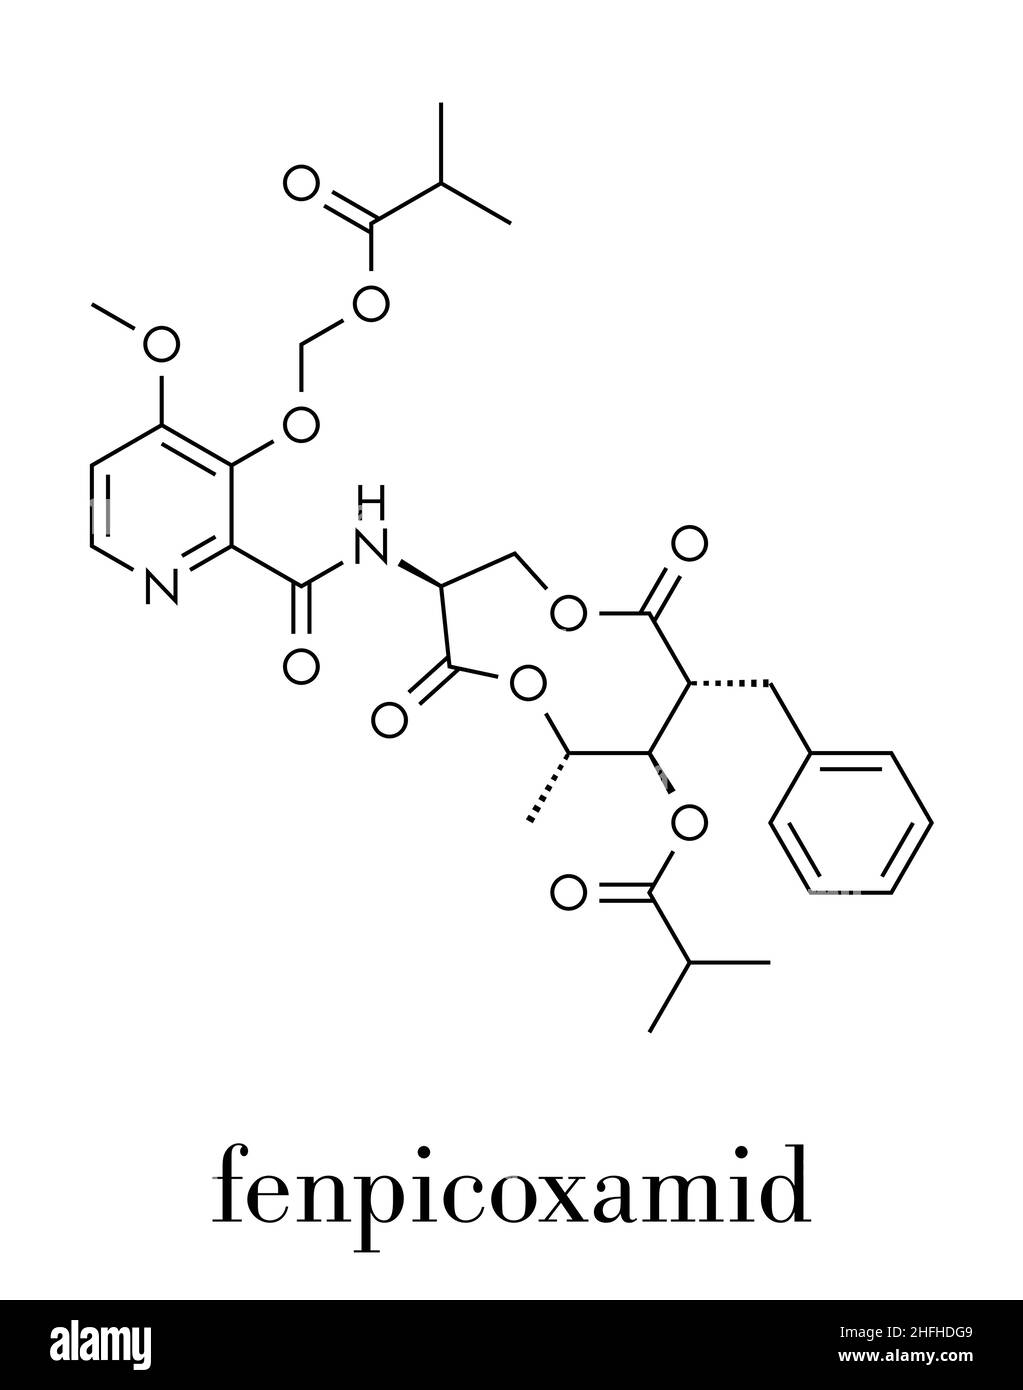 Fenpicoxamid fungicide molecule. Skeletal formula. Stock Vector